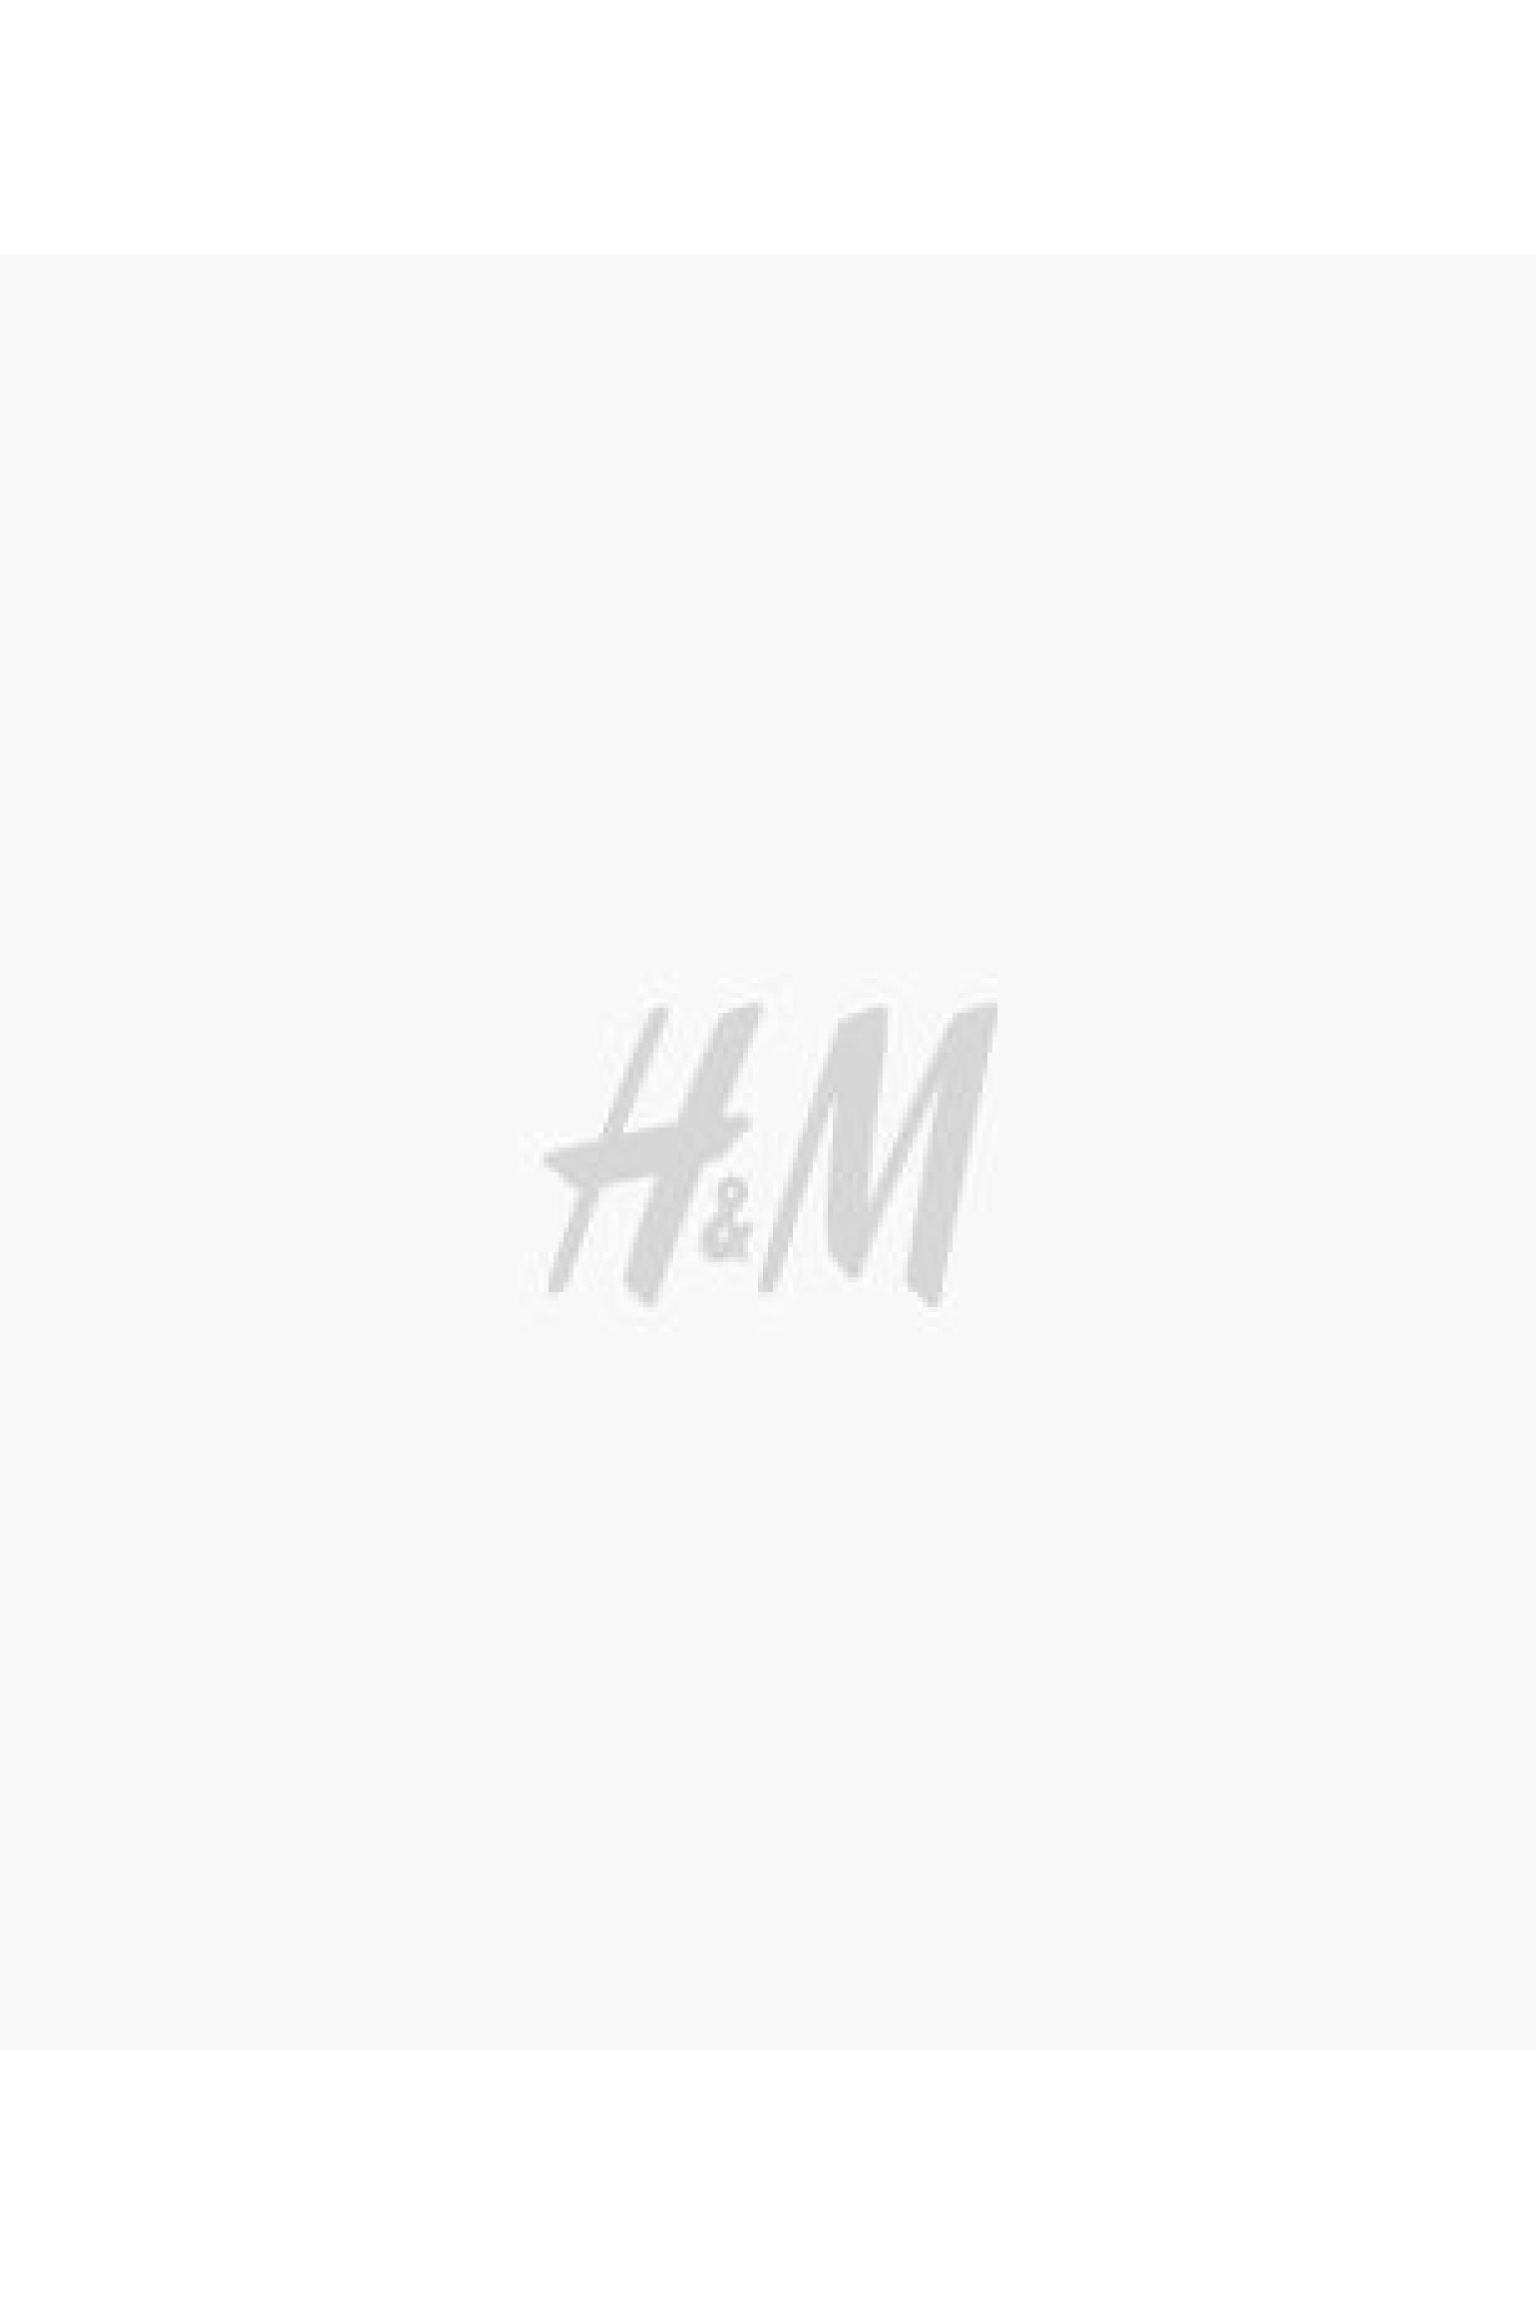 에이치앤엠 H&M Small Backpack